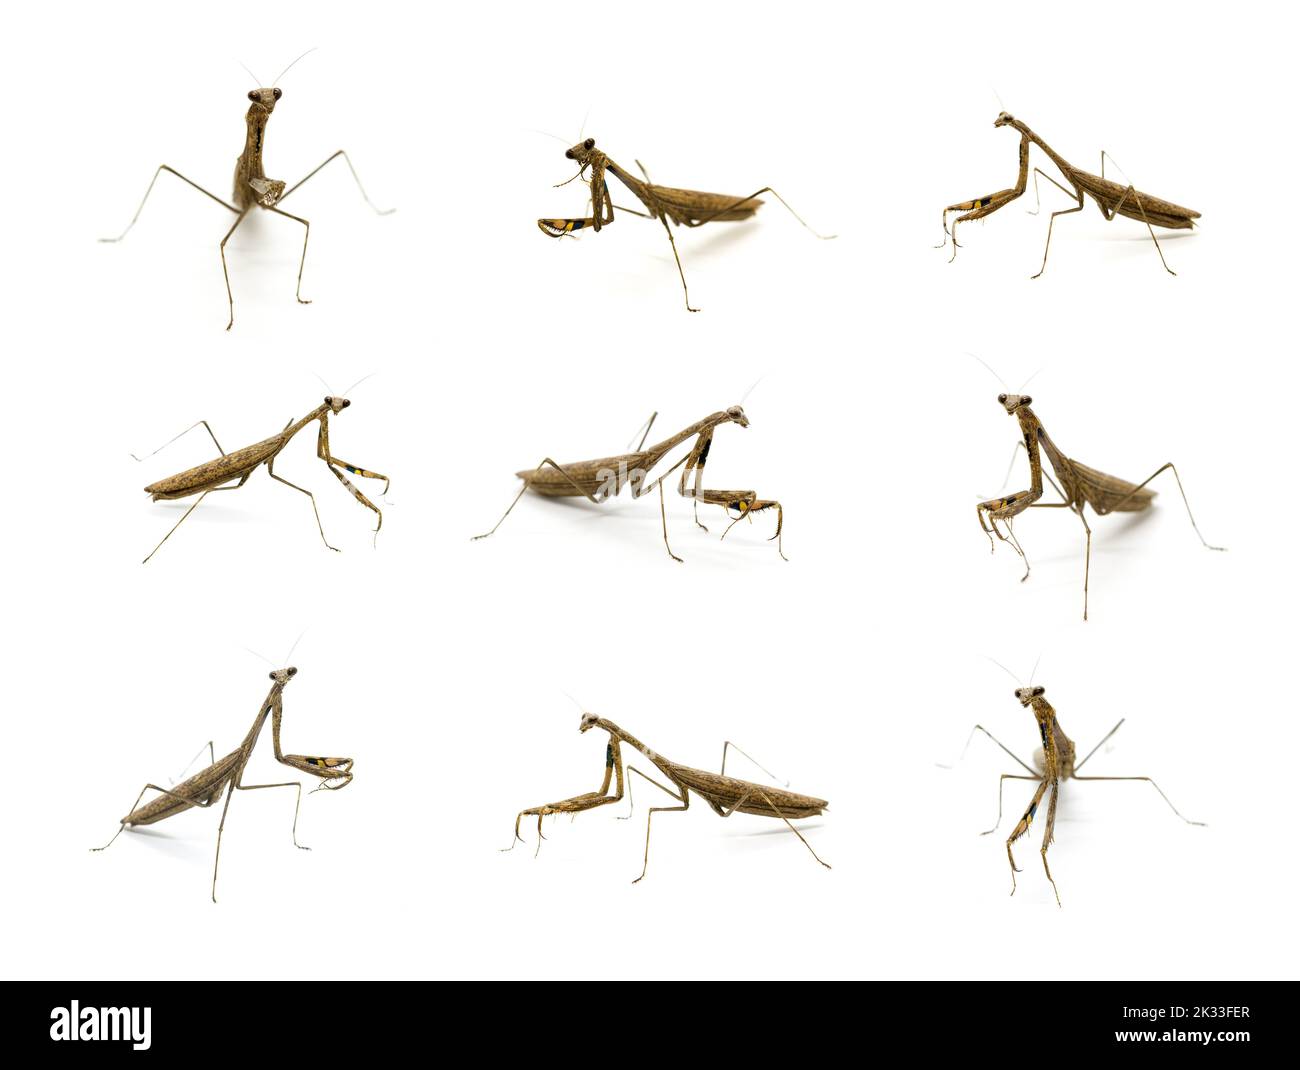 Gruppo di mantis in preghiera (Stagmomantis carolina) su sfondo bianco. Insetto. Animale. Foto Stock